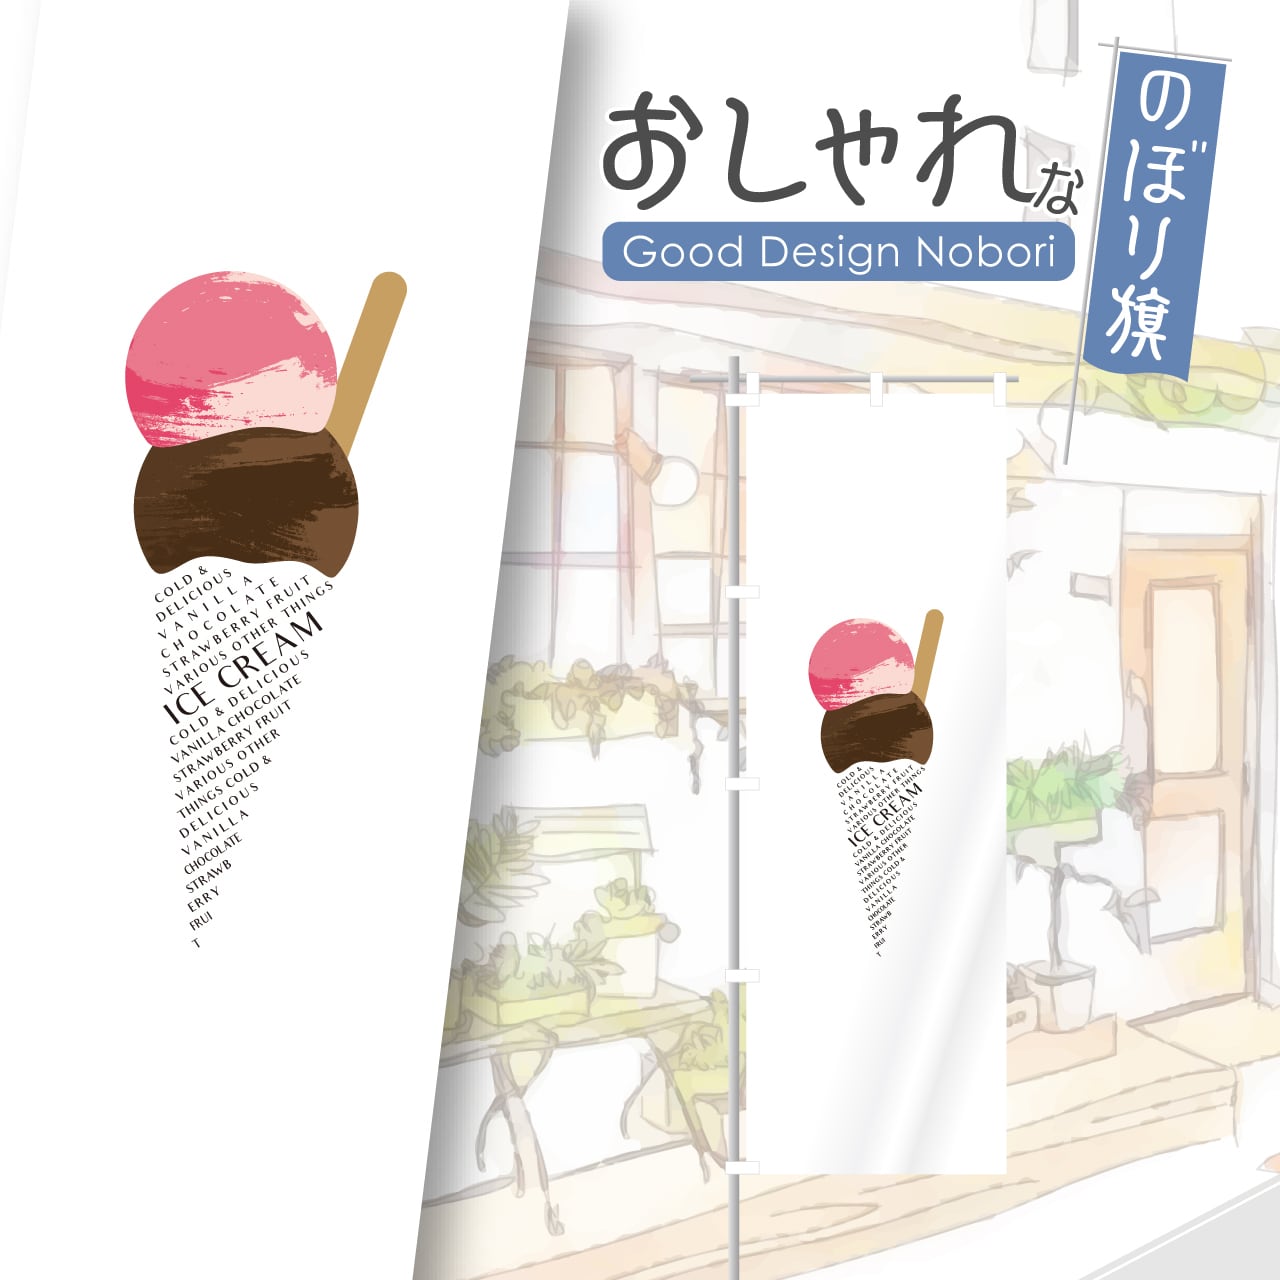 アイス アイスクリーム ソフトクリーム のぼり旗 おしゃれ のぼり オリジナルデザイン 1枚から購入可能 HATAYA-ハタヤ-おしゃれな  のぼり旗 看板 専門店